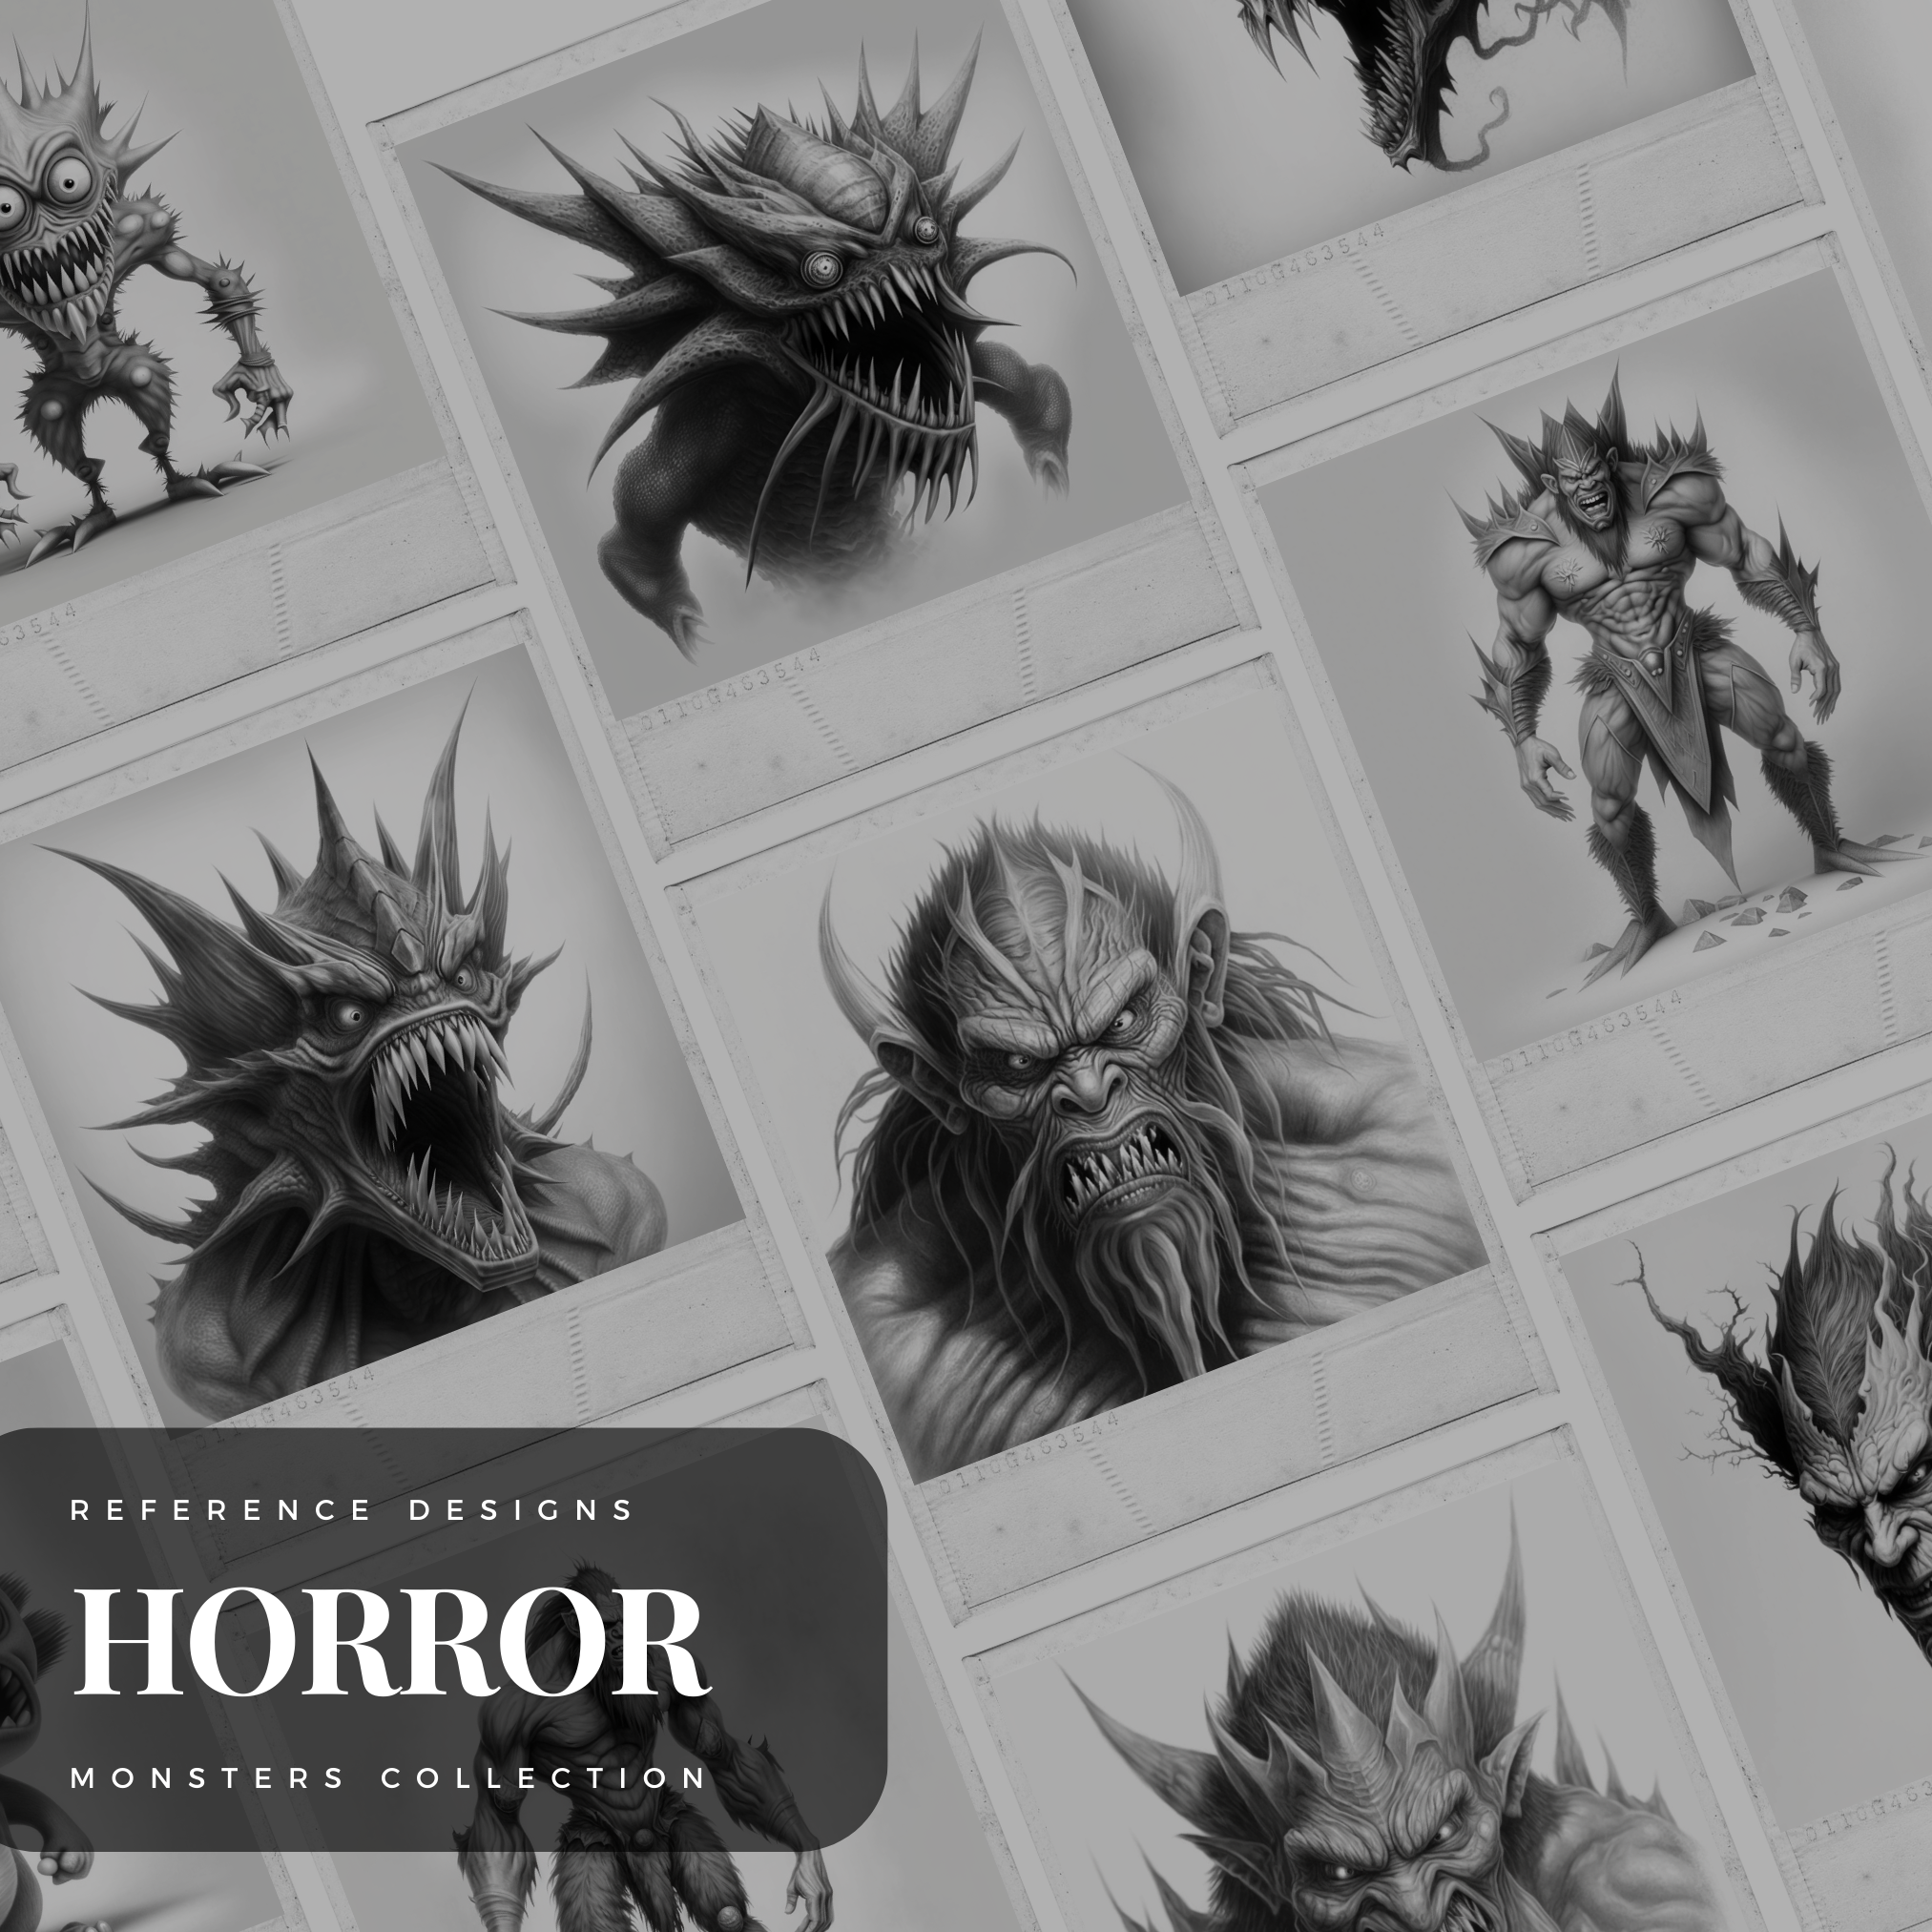 Monsters Digital Horror Design Collection: 50 Procreate & Sketchbook Images